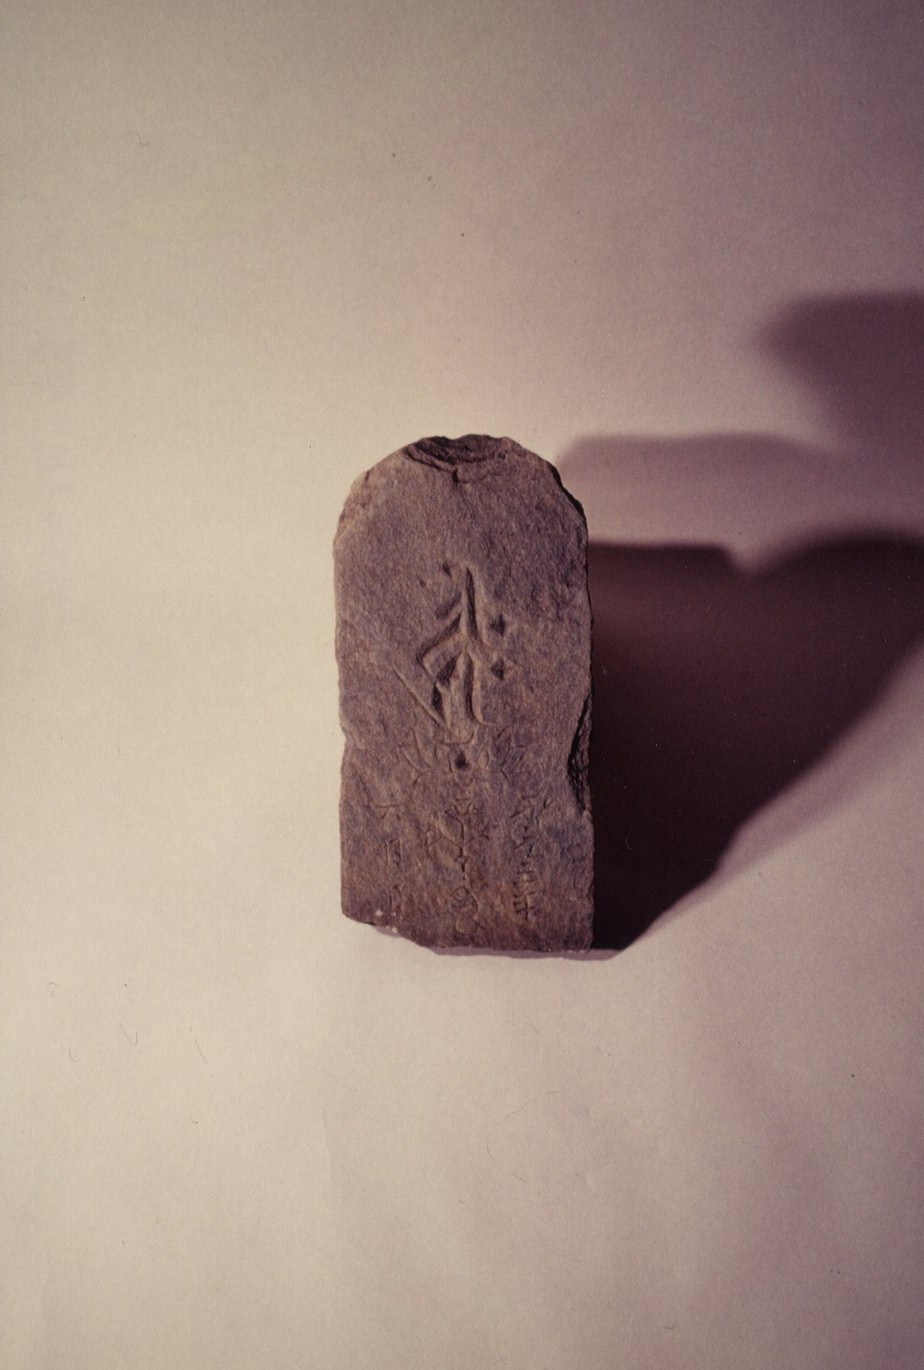 梵字が刻まれている武蔵型の板碑の写真